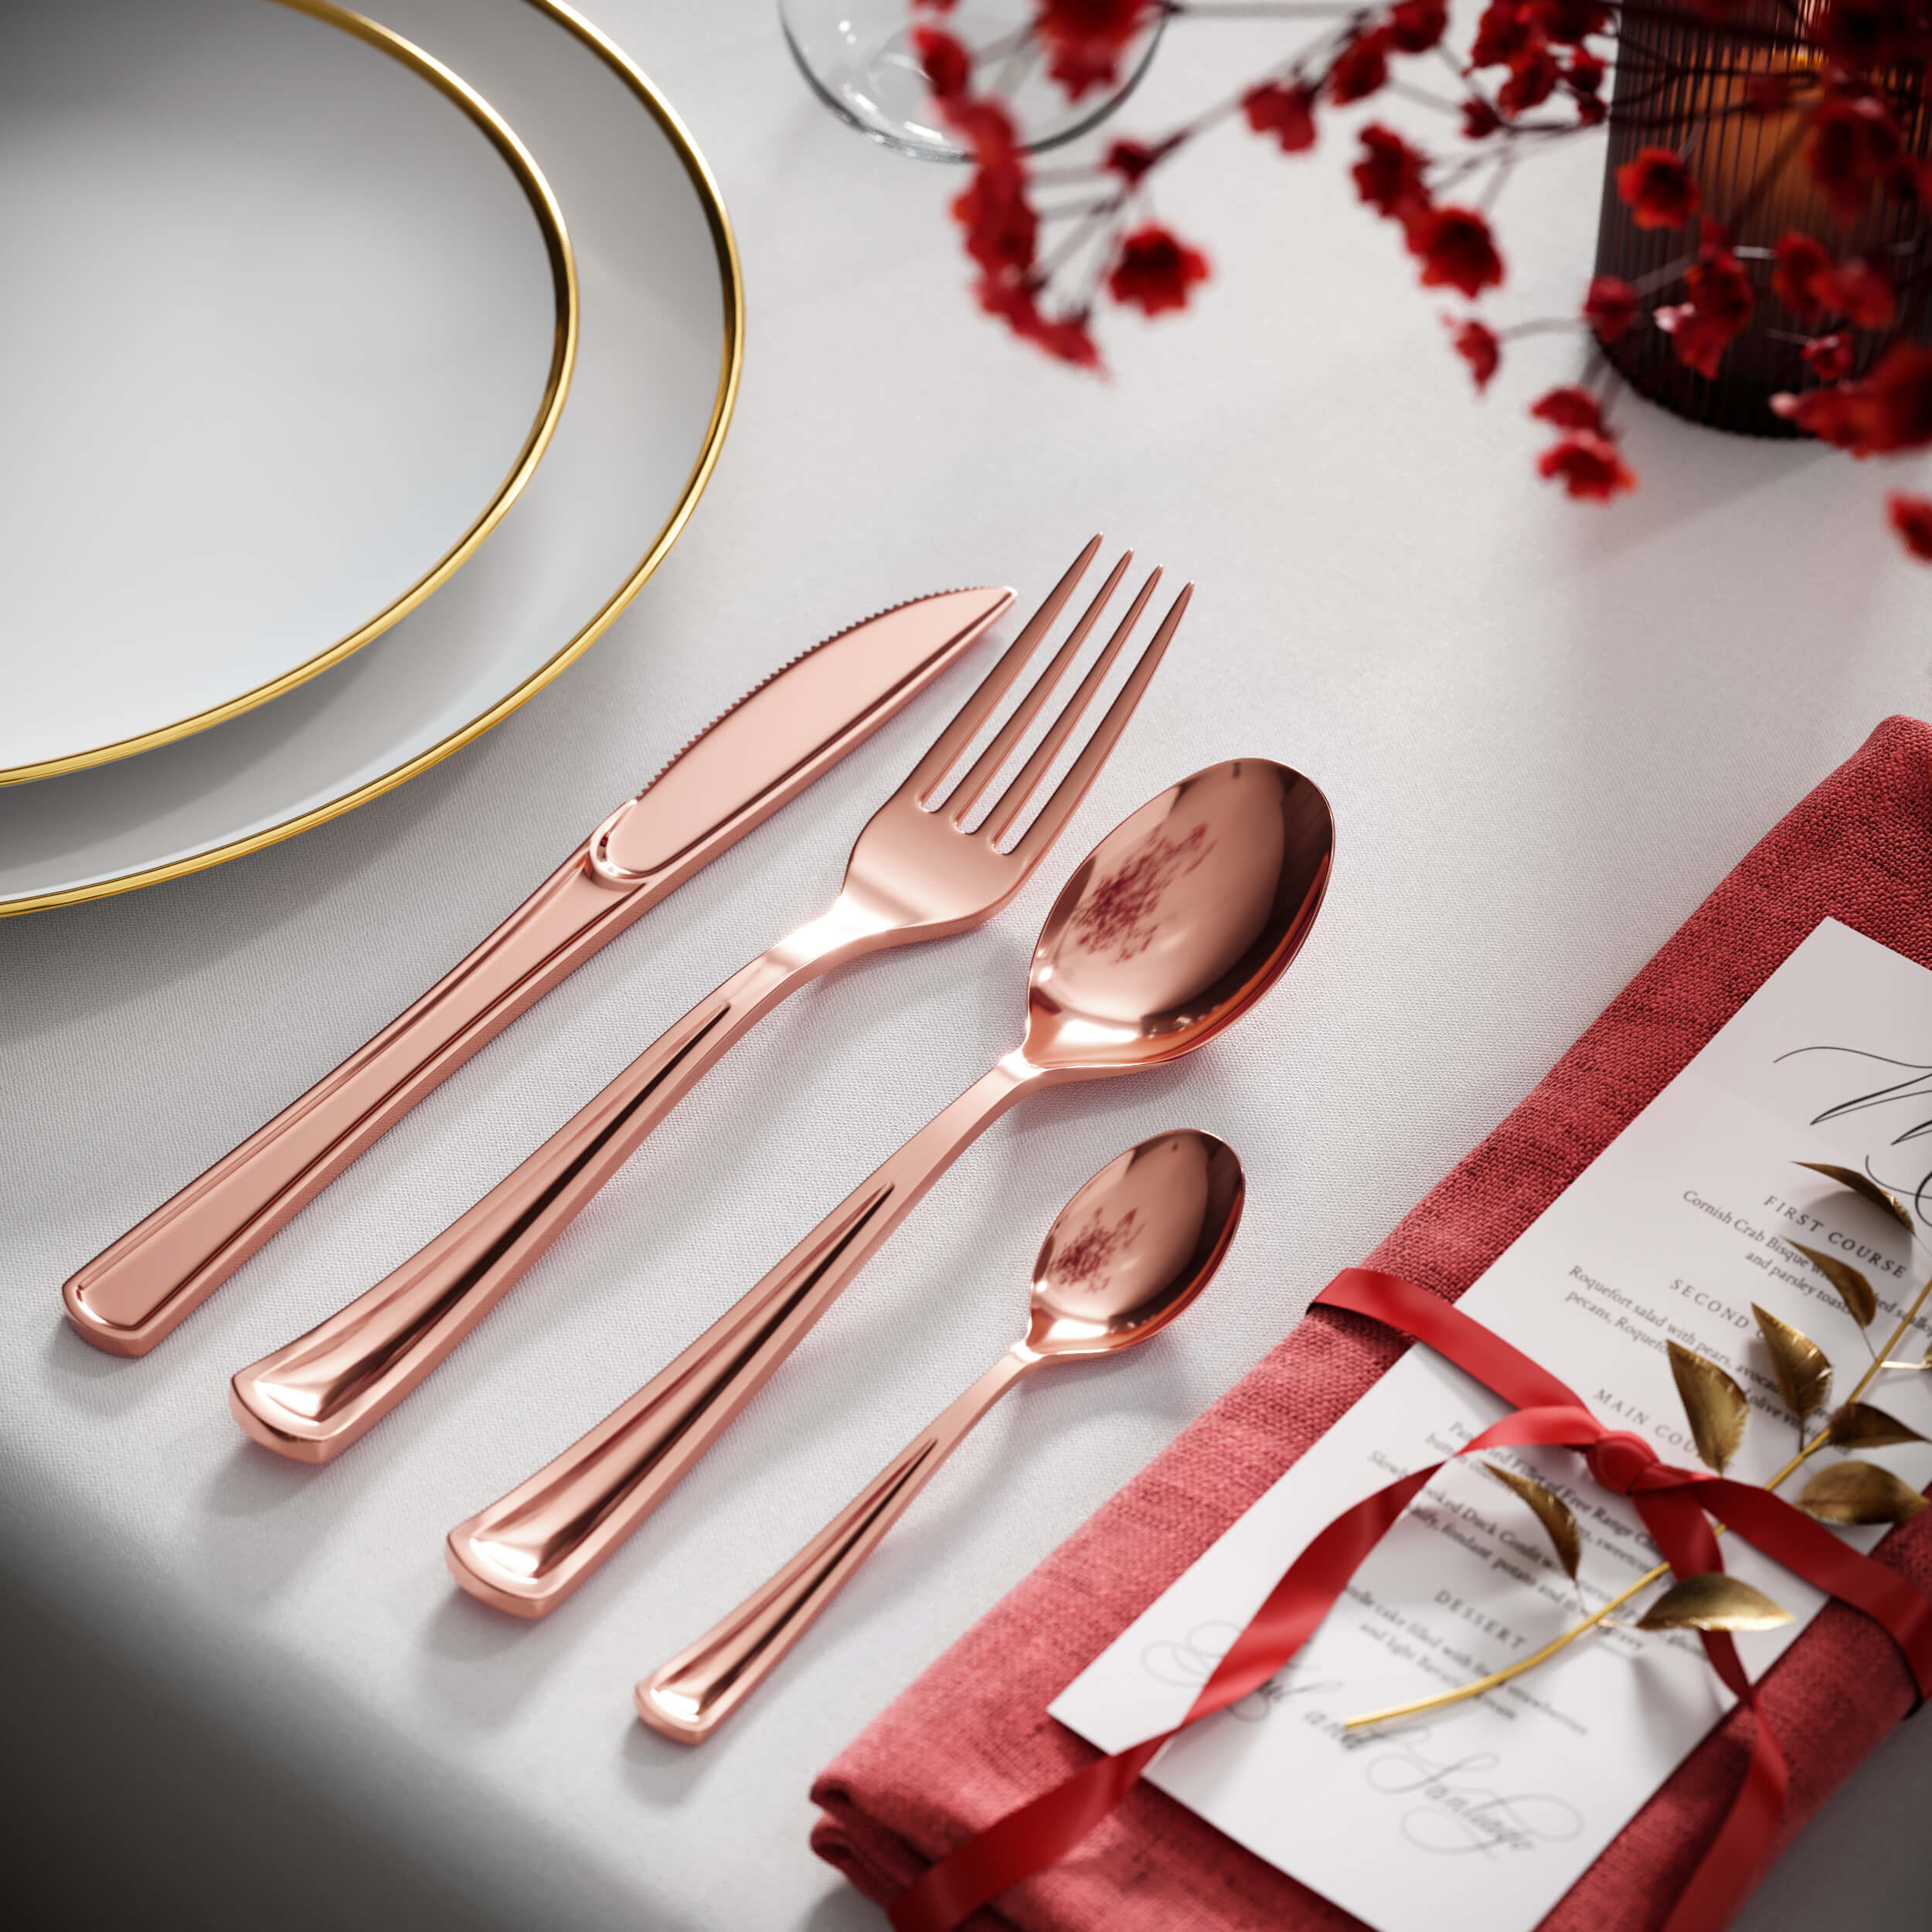 Exquisite Classic Rose Gold Plastic Tea Spoons | 20 Count